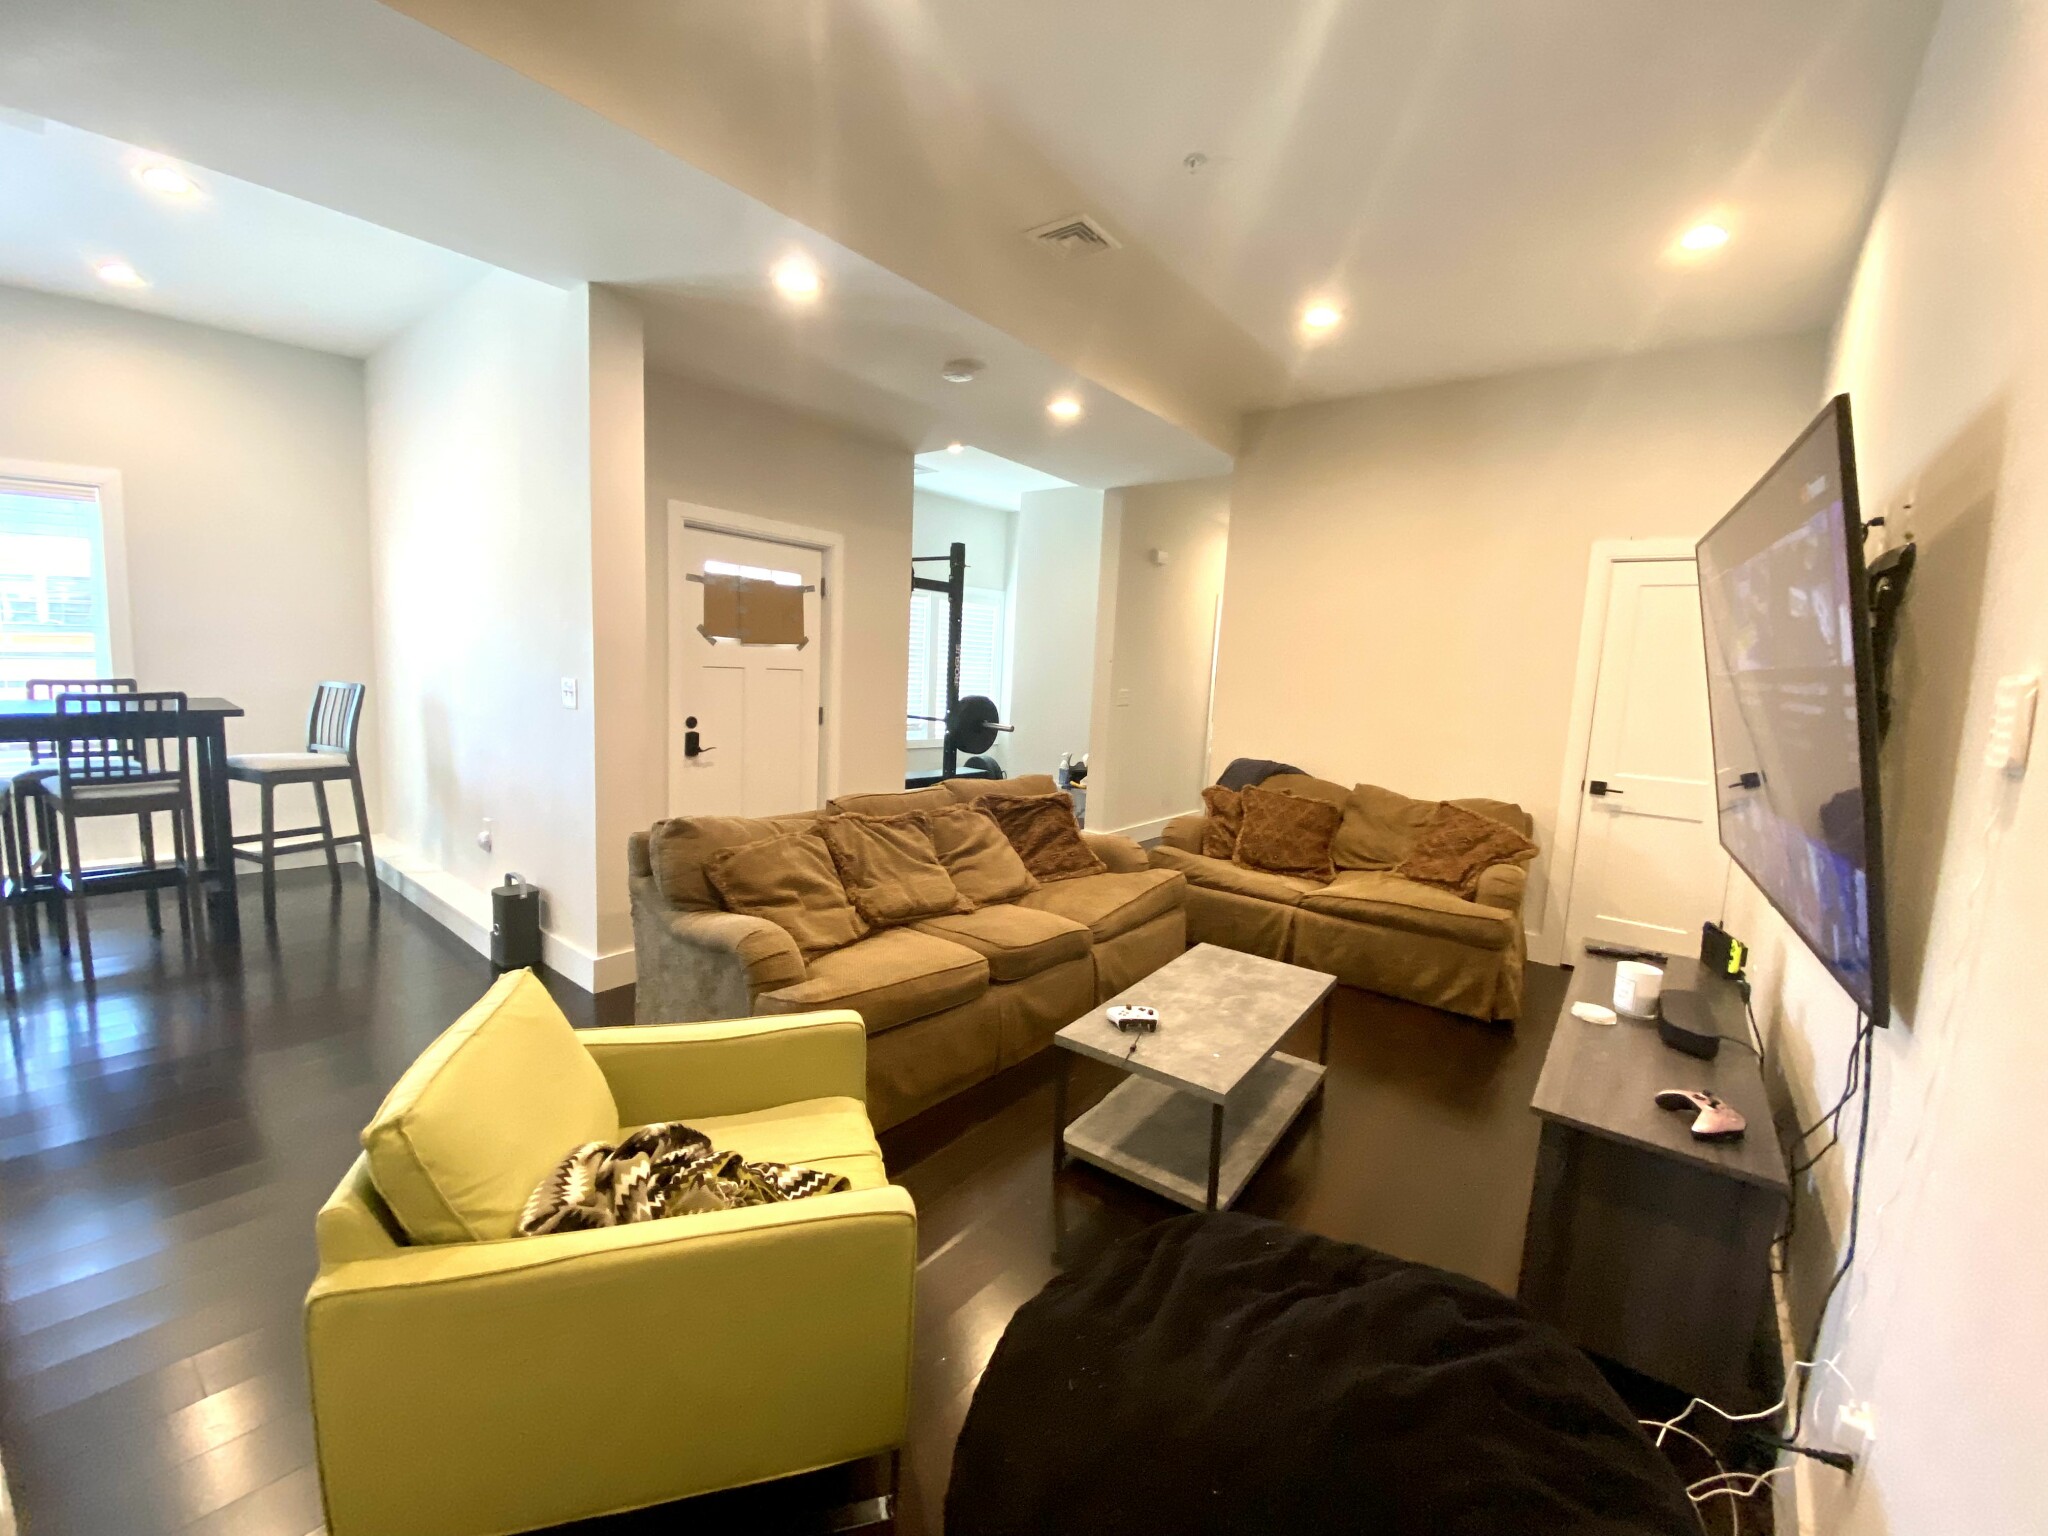 Photos of apartment on Cedar St.,Boston MA 02119